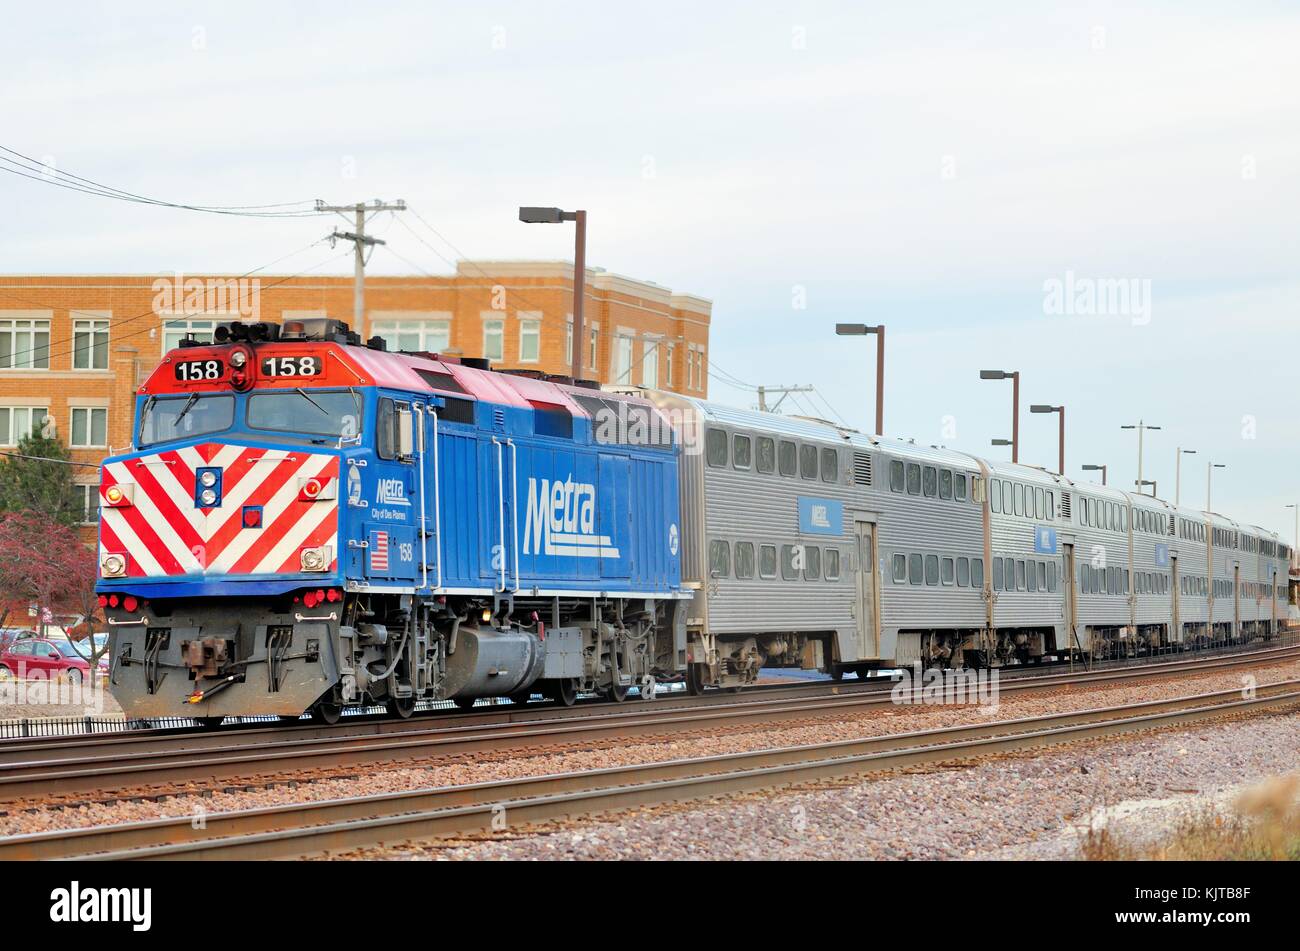 Eine eingehende Metra Zug transportiert Pendler zu Chicago in die Vorstadt Lombard Bahnhof ankommen. Lombard, Illinois, USA. Stockfoto